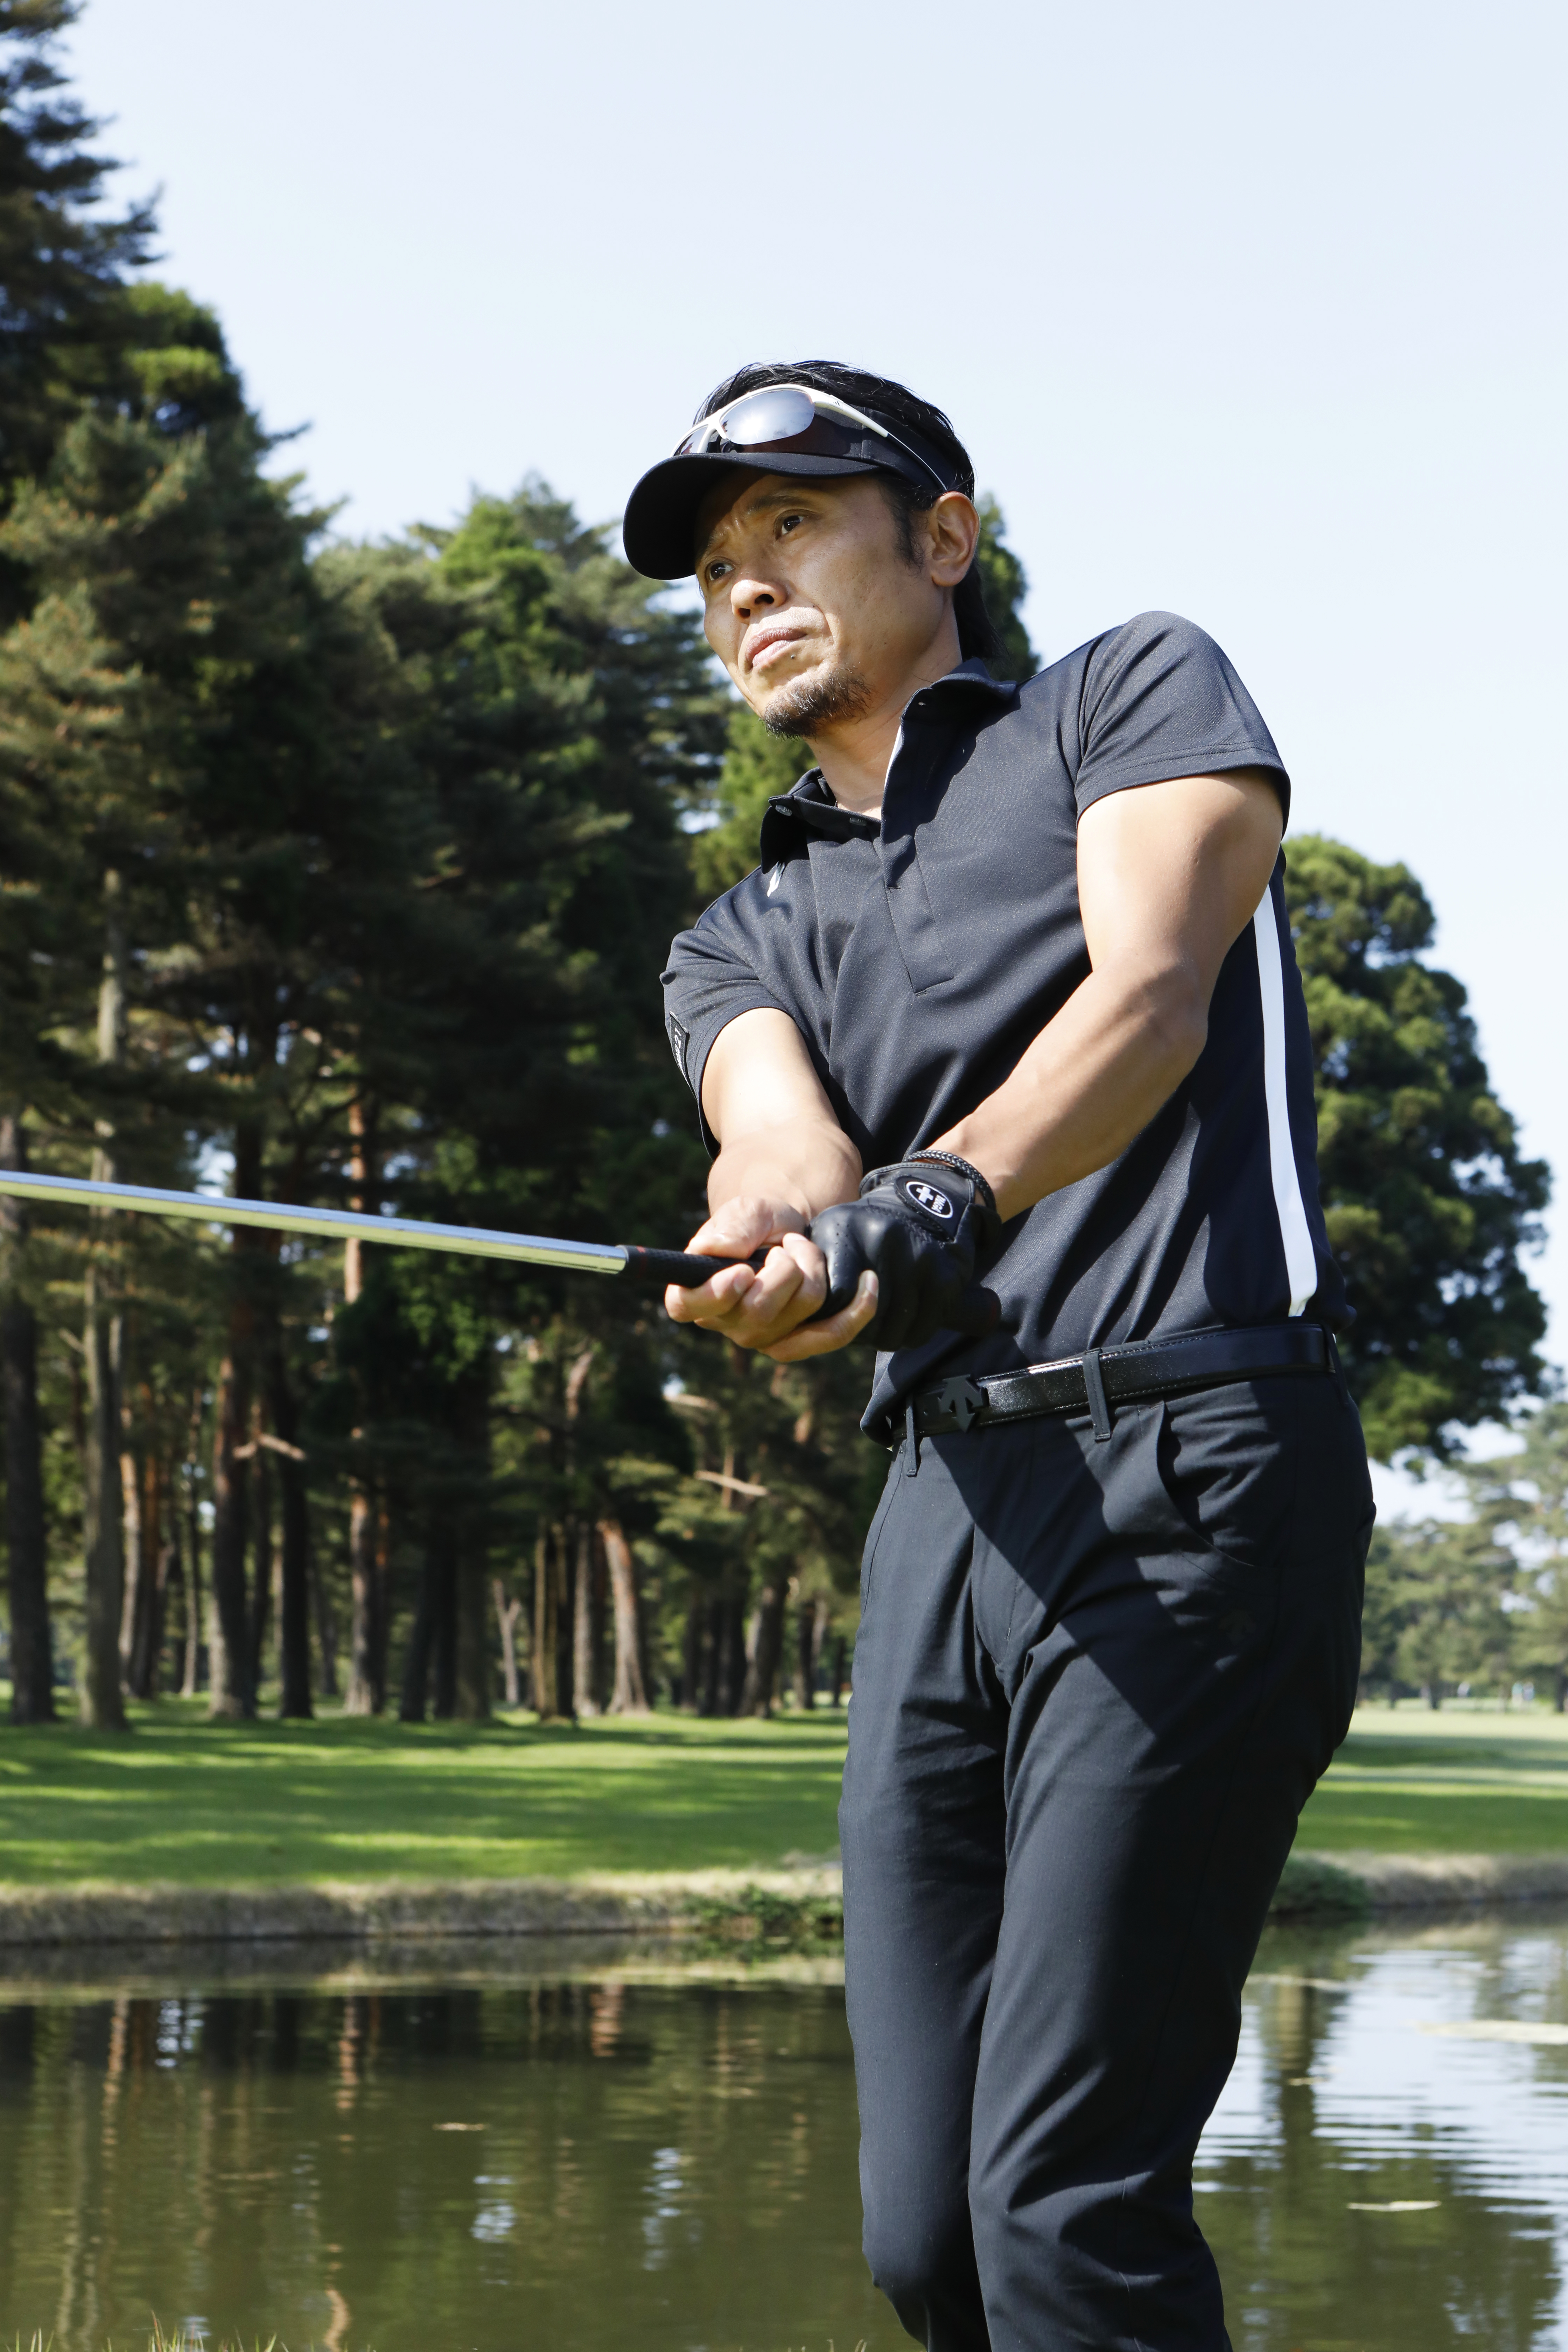 ピタッと寄せる 距離感が合うアプローチの打ち方 東京都港区 谷将貴が主催するゴルフスクール